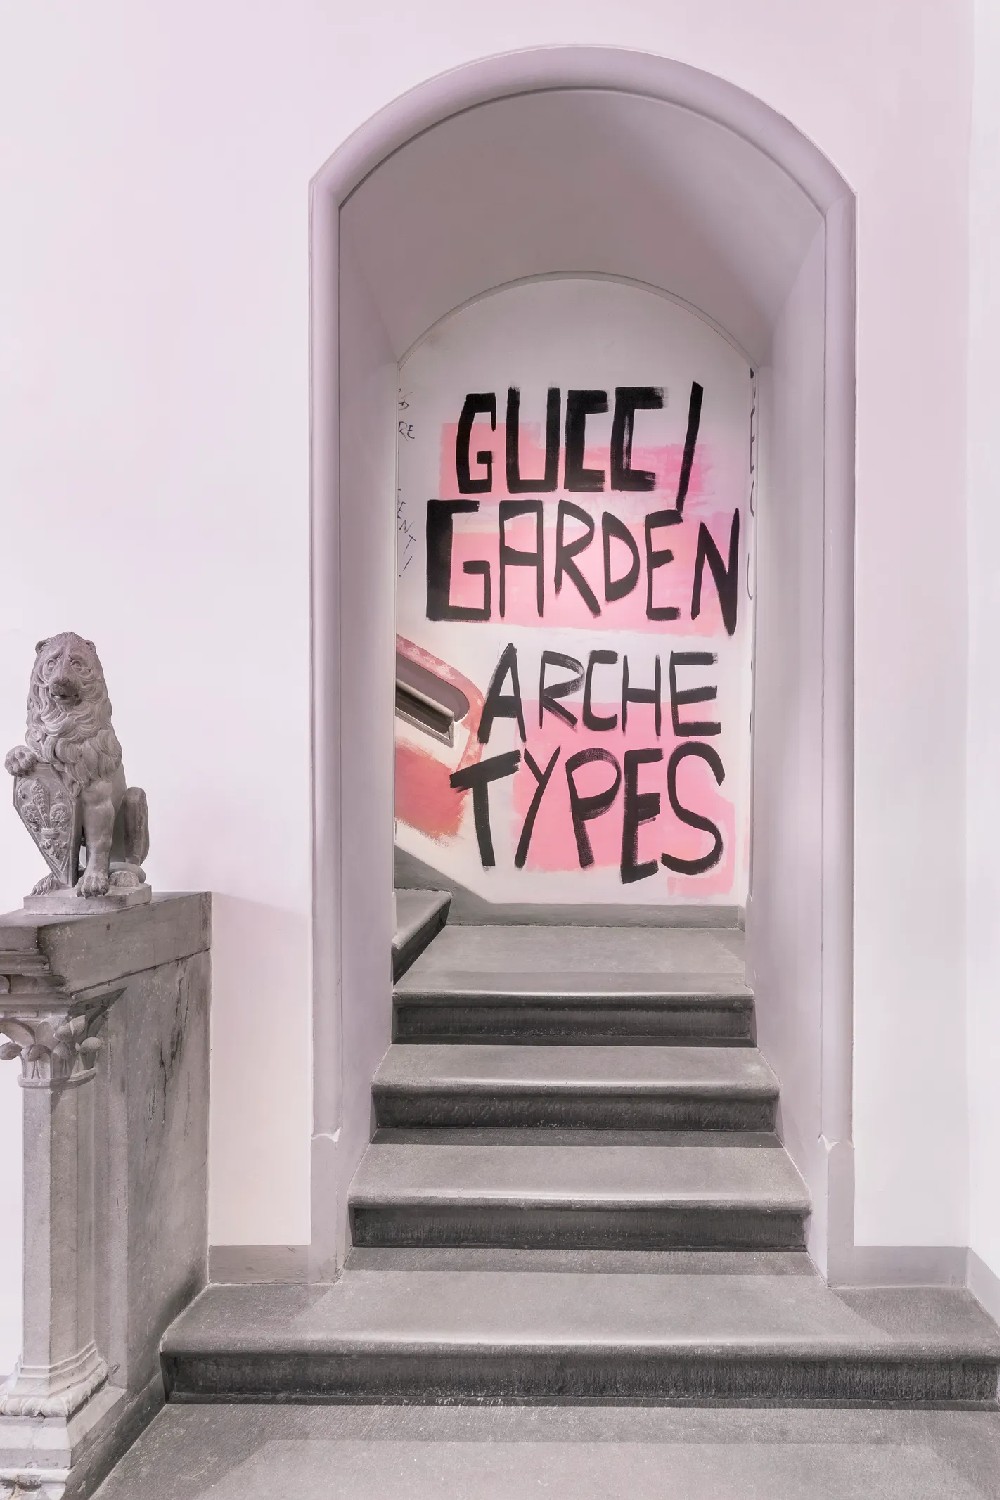 Gucci-Garden-Archetype